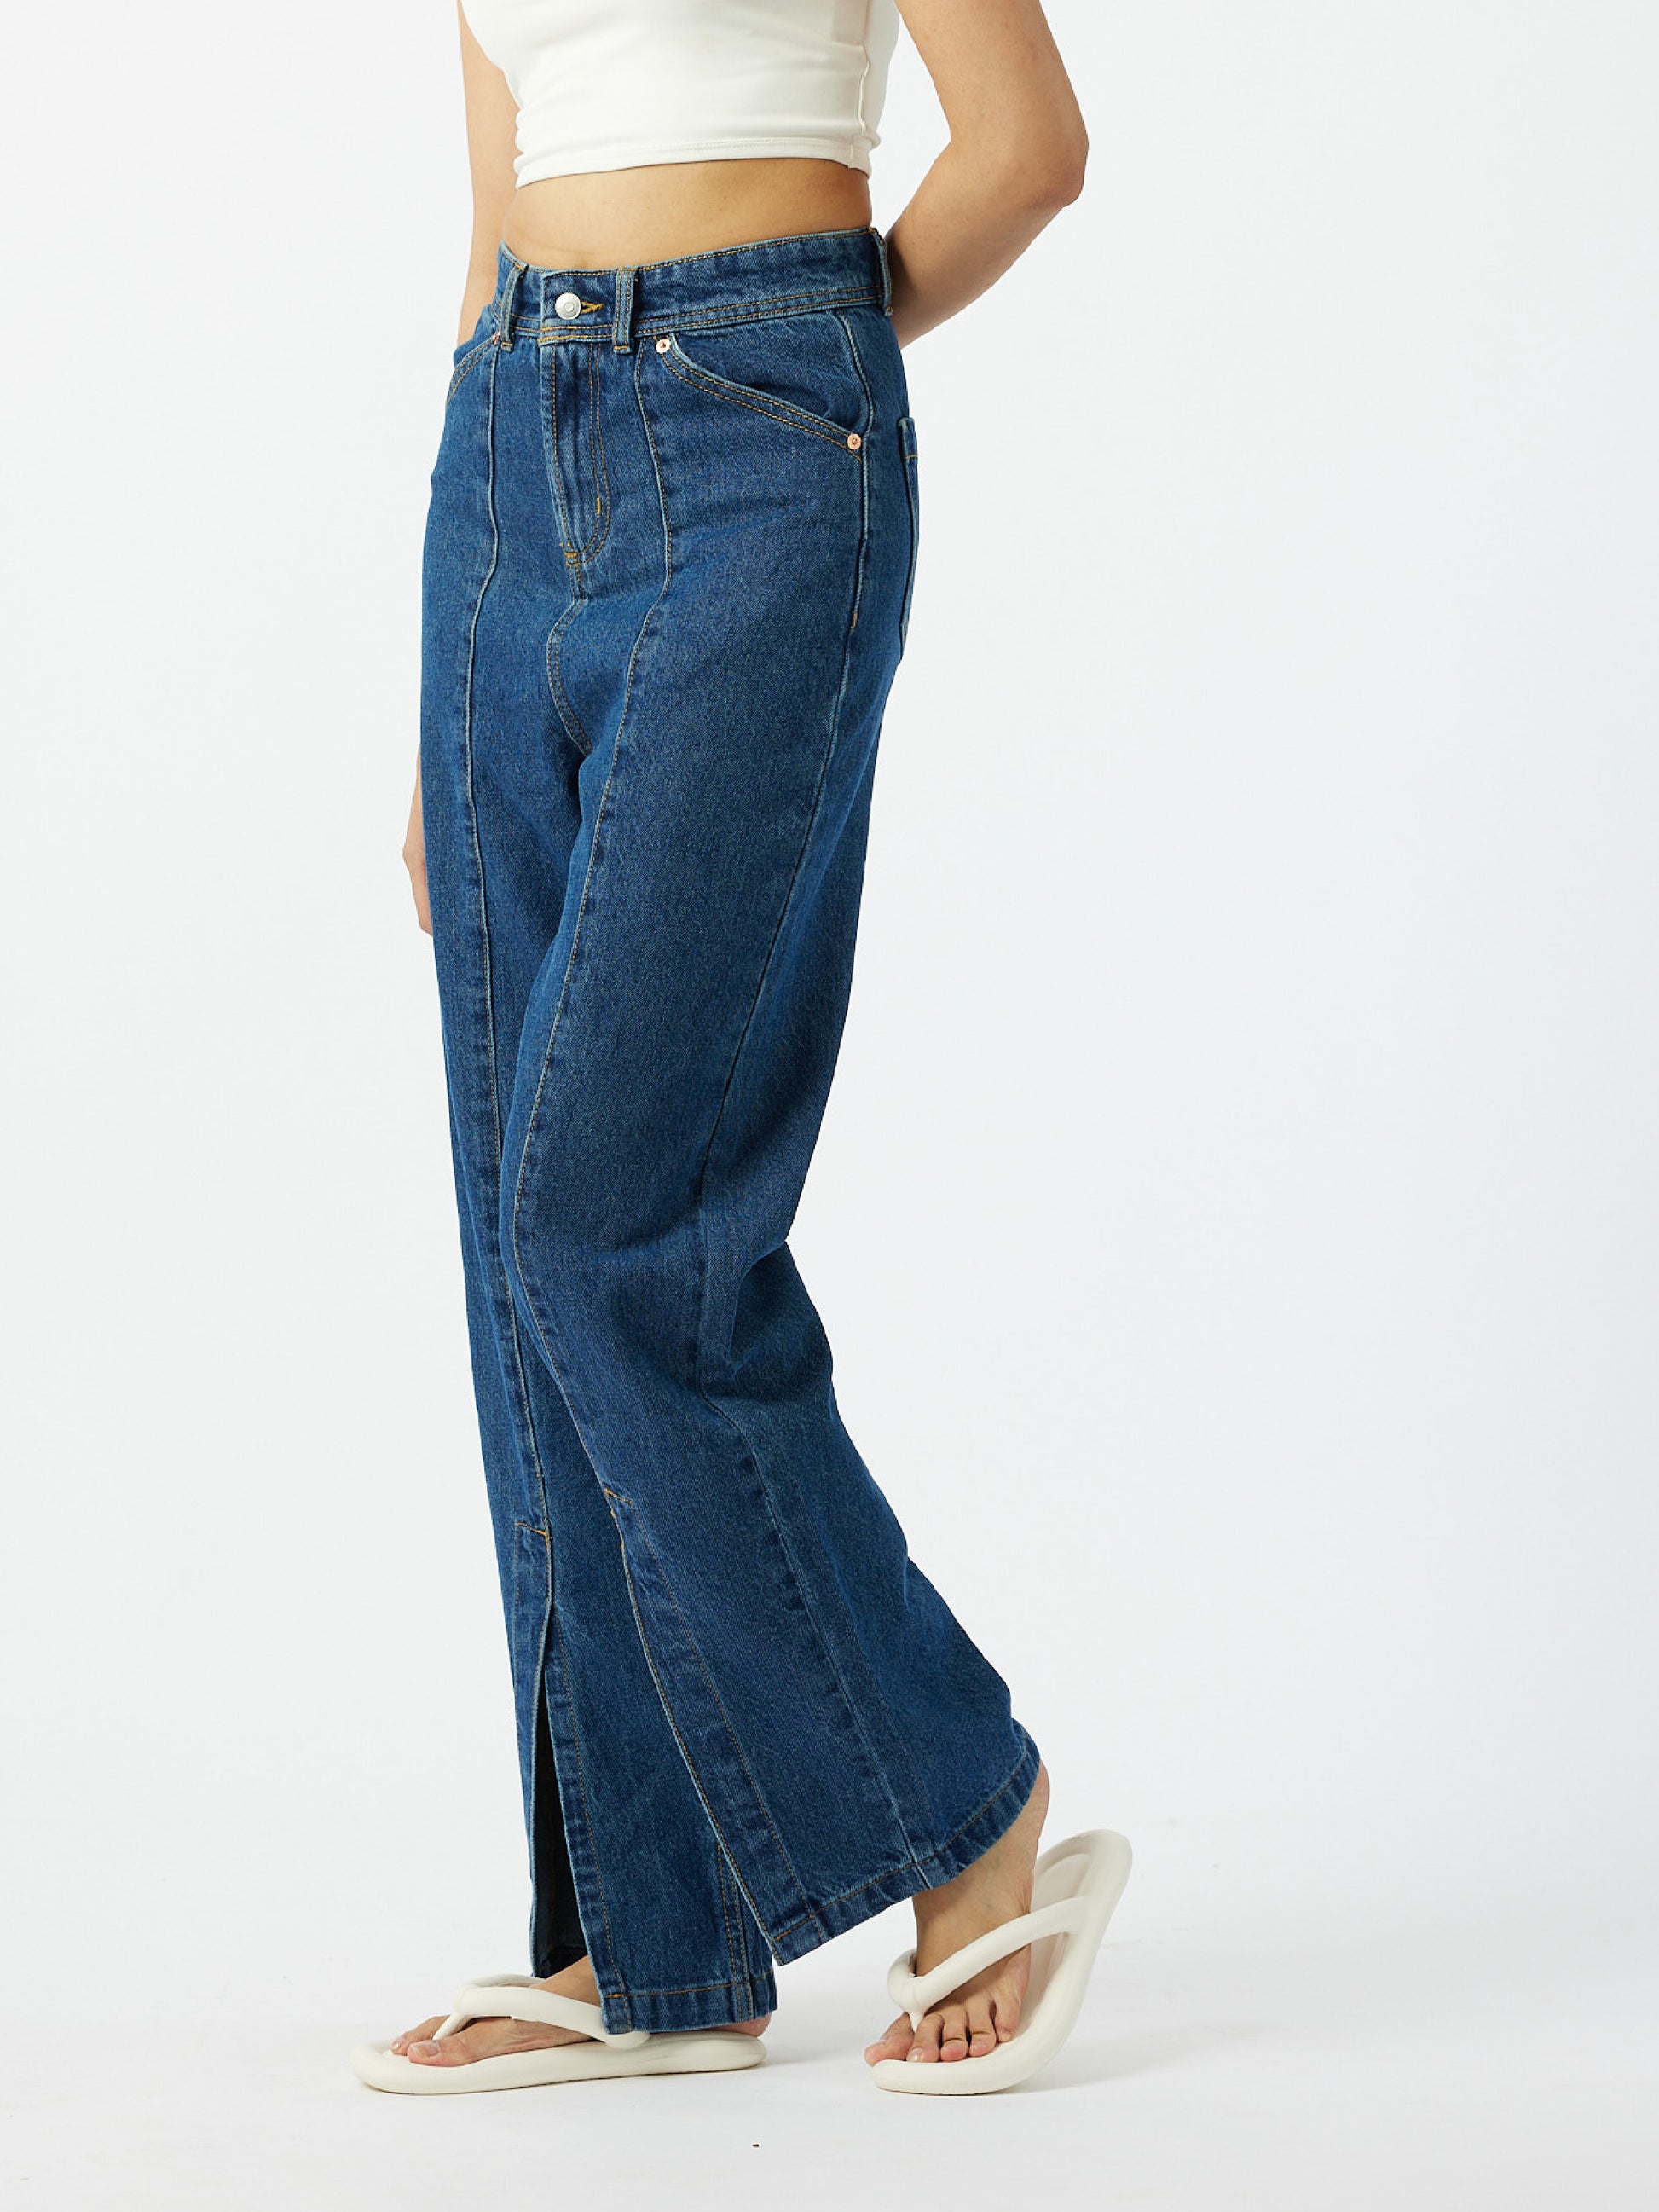 Purchase Denim Slit Jeans Dark blue, women's denim, 100% cotton jeans